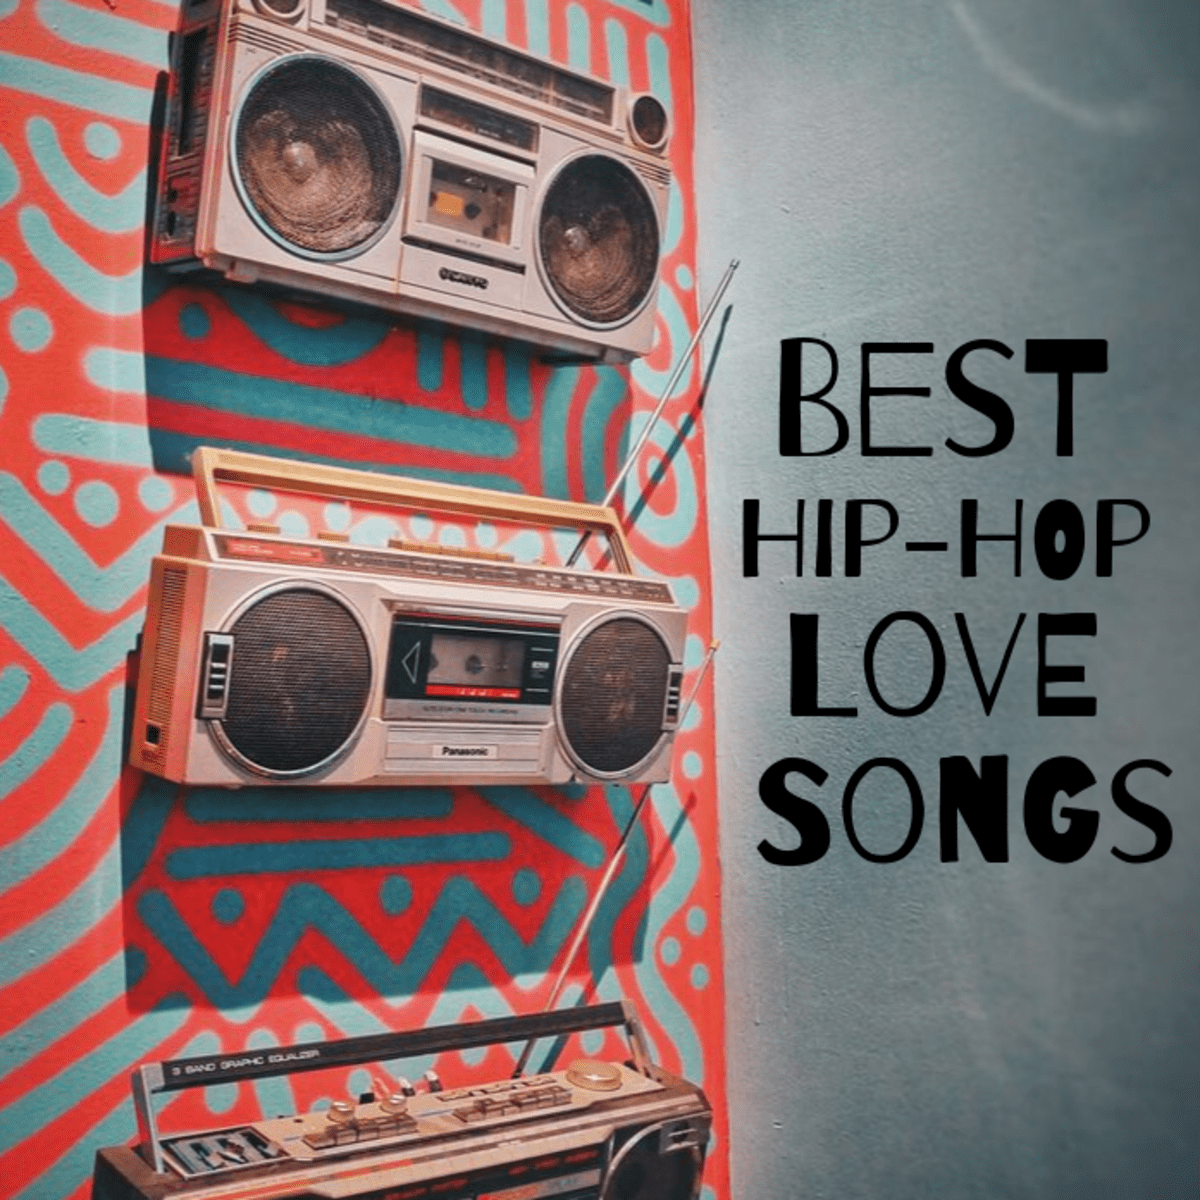 100 best hip hop love songs